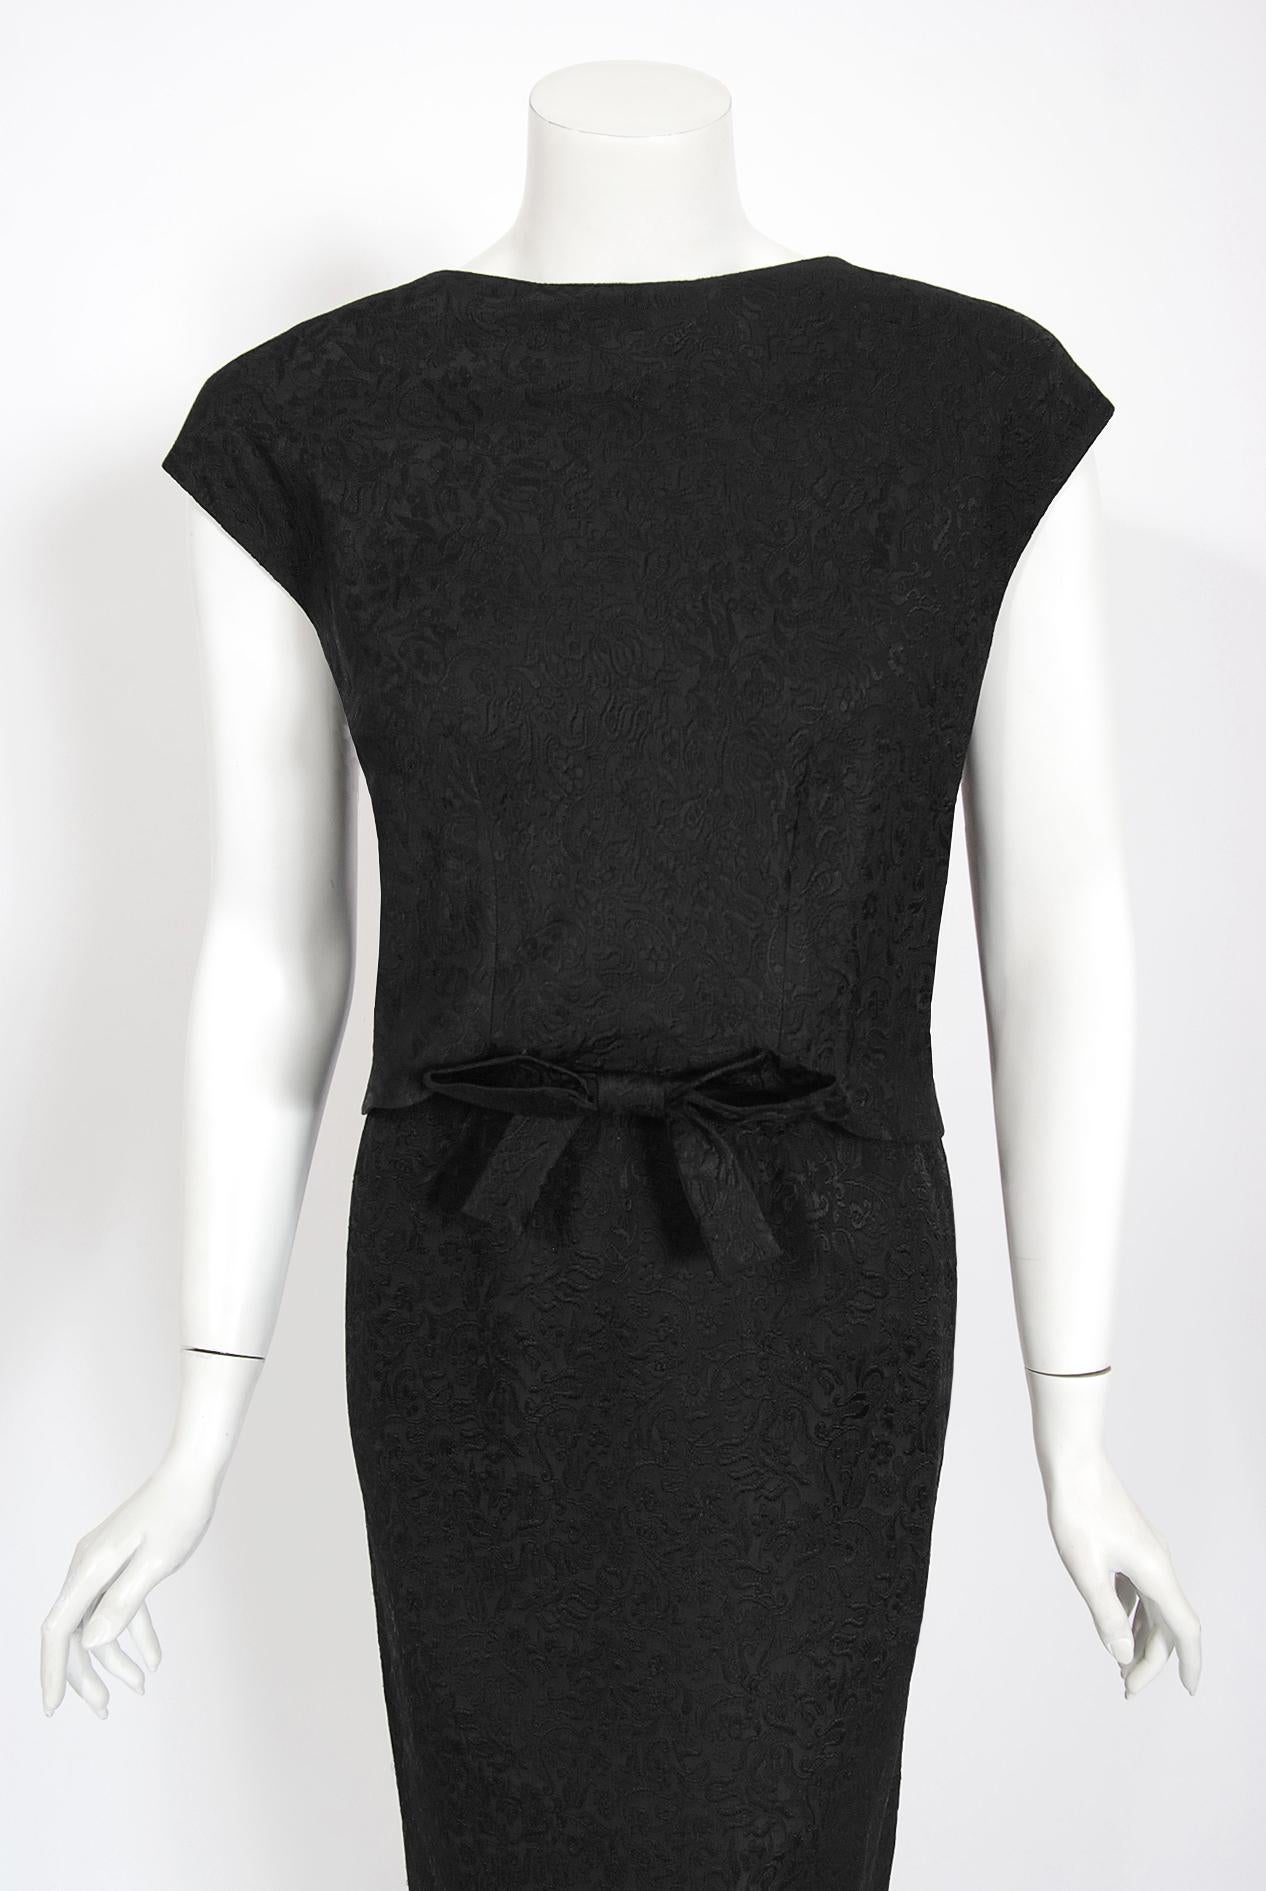 Magnifique robe de cocktail en soie noire texturée Eisa de Balenciaga:: issue de sa collection haute couture de 1961. Cristobal Balenciaga a commencé à travailler dans le domaine de la mode à un très jeune âge. La légende veut que la Marquise de